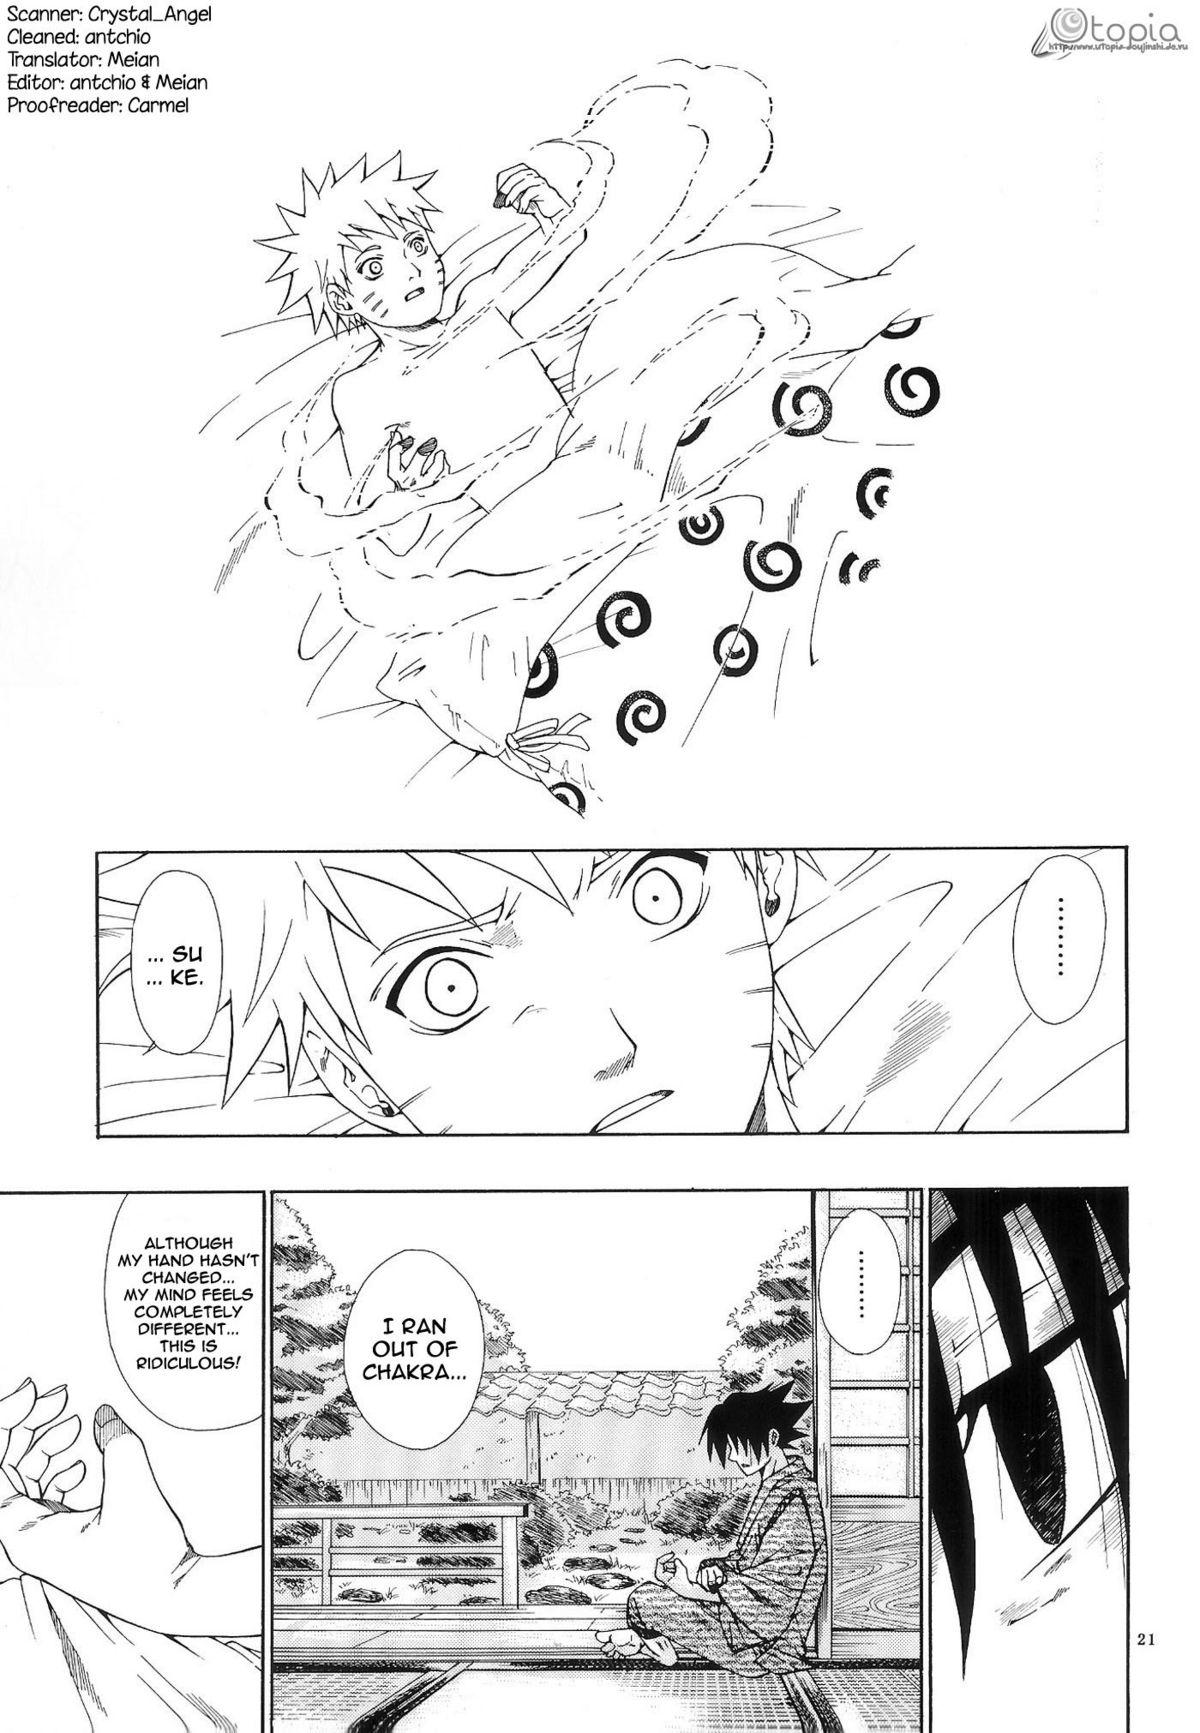 ERO ERO²: Volume 1.5  (NARUTO) [Sasuke X Naruto] YAOI -ENG- 19